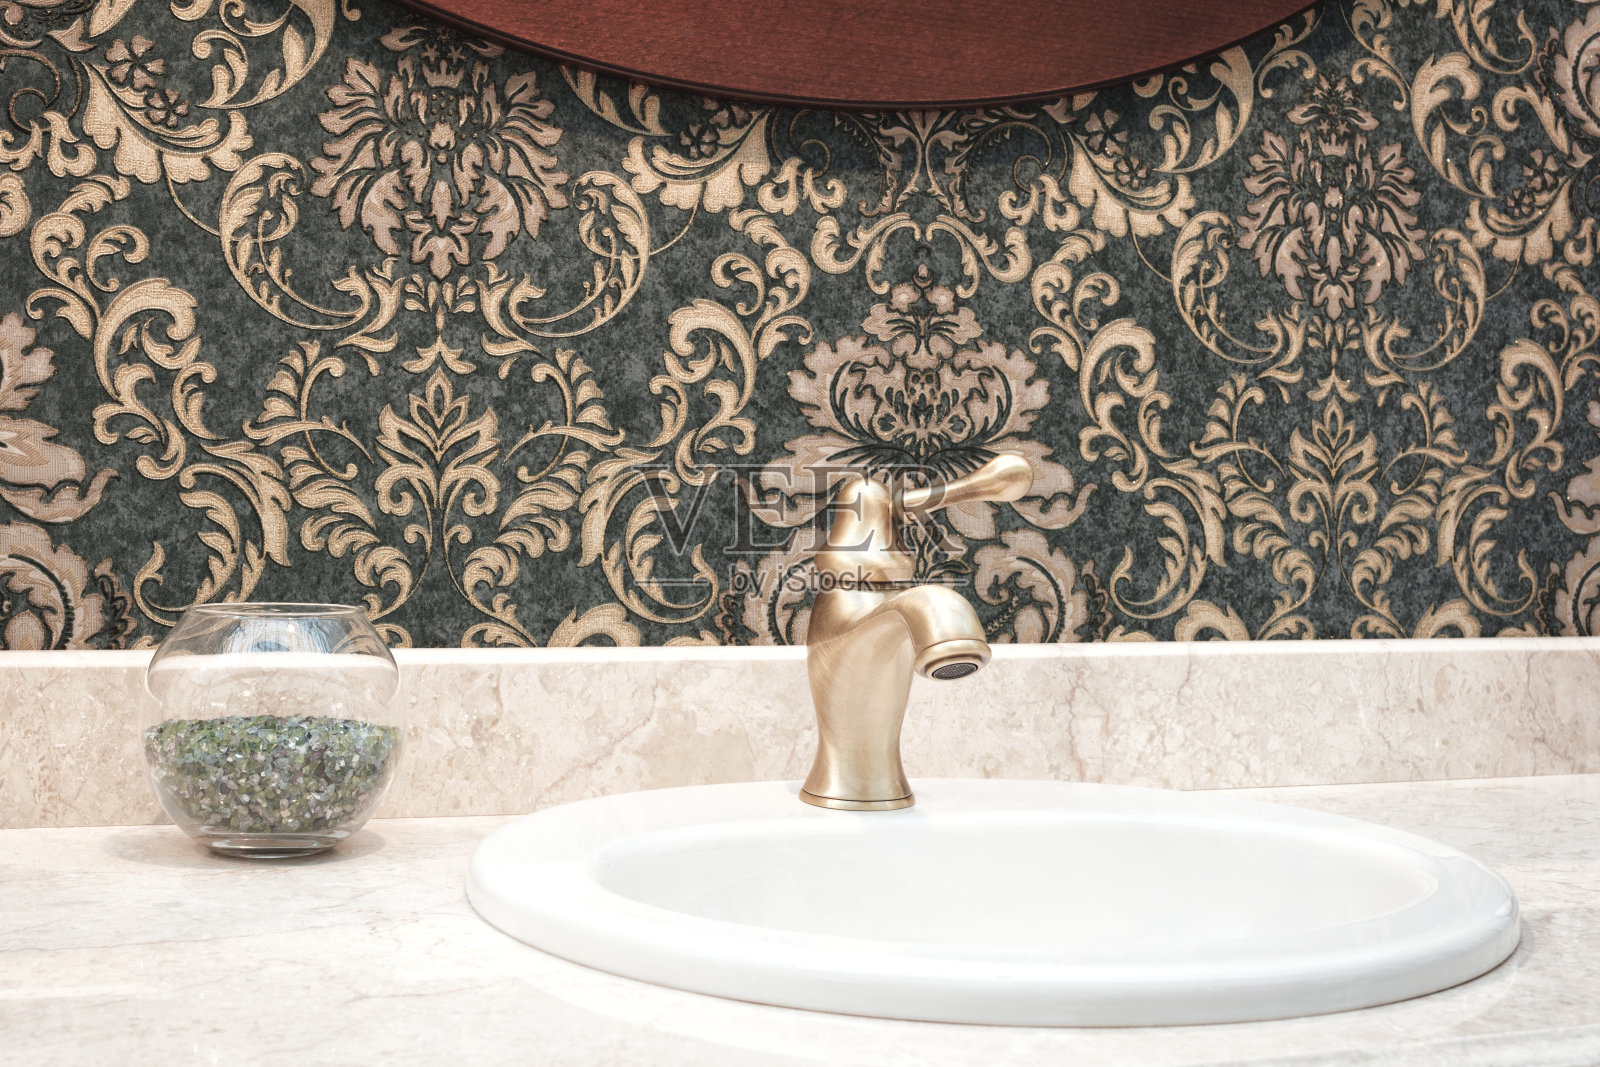 浴室经典的内部水槽和古典复古风格的青铜水龙头照片摄影图片